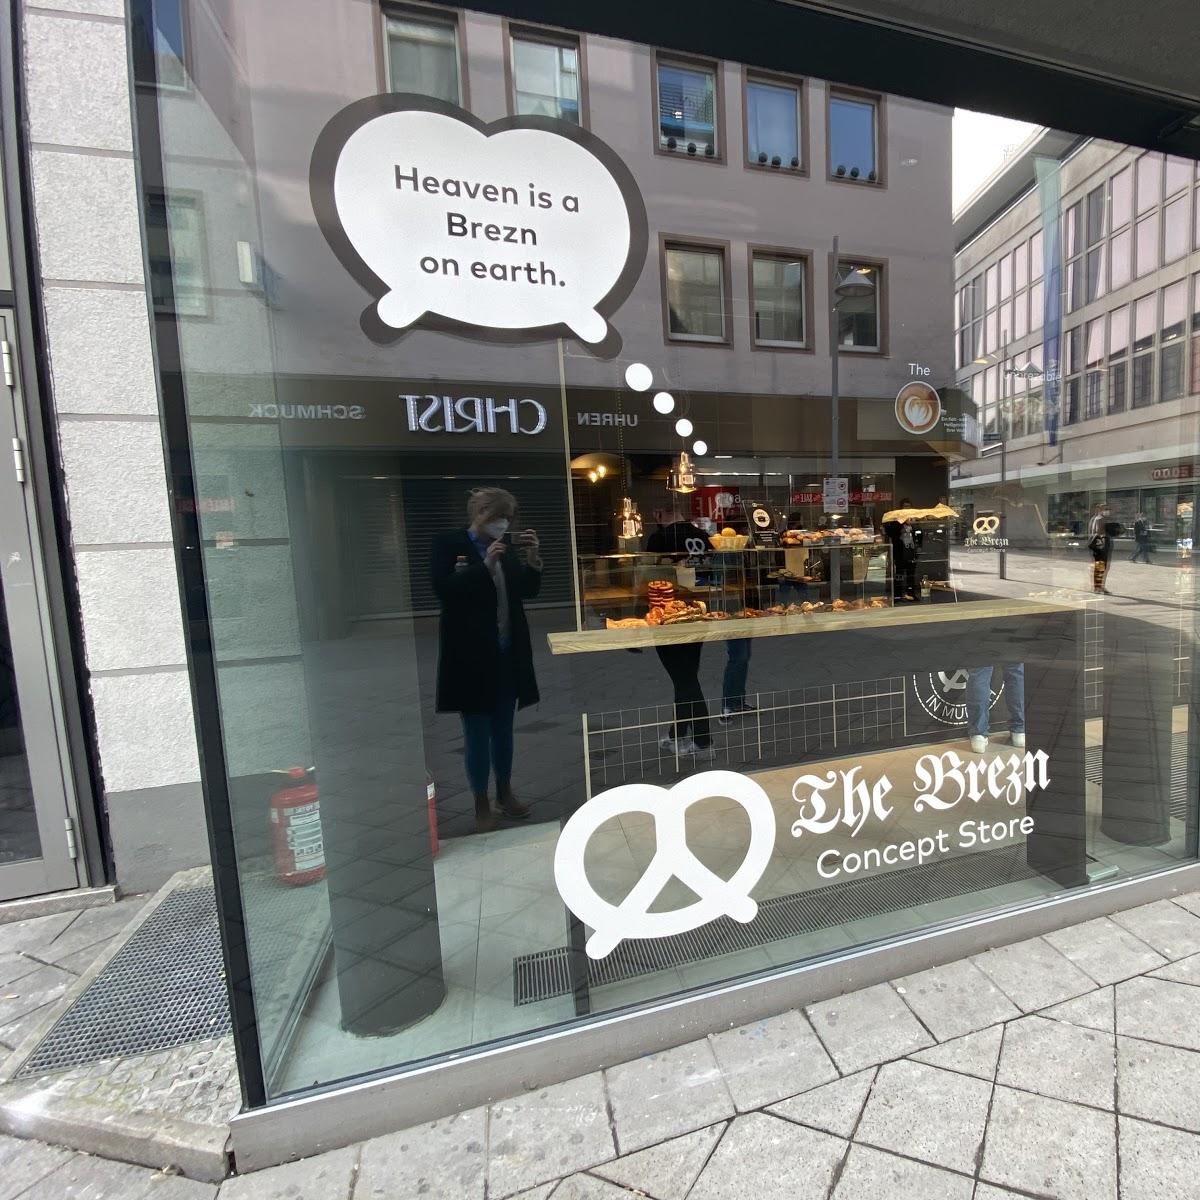 Restaurant "The Brezn Concept Store" in Nürnberg